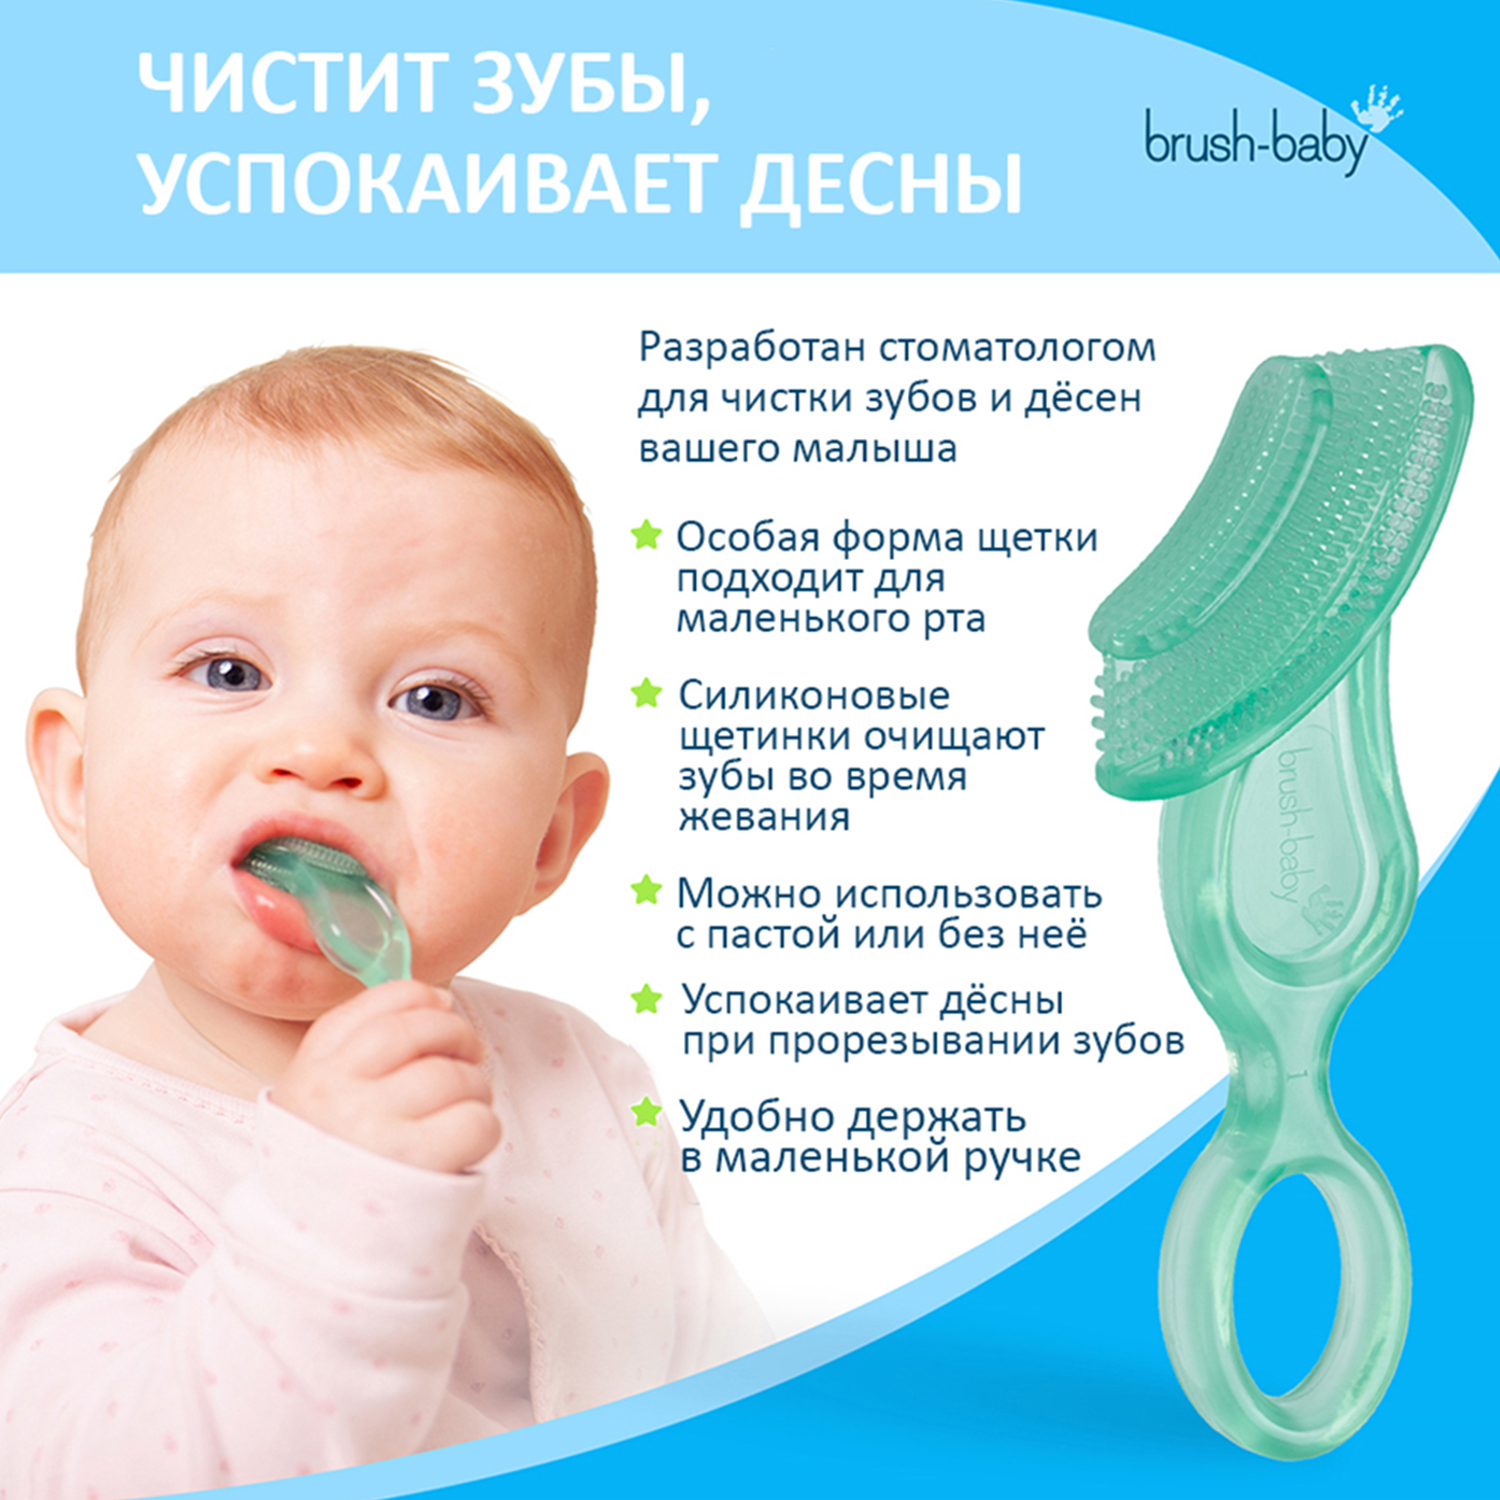 Зубная щетка Brush-Baby Chewable Toothbrush жевательная - фото 3